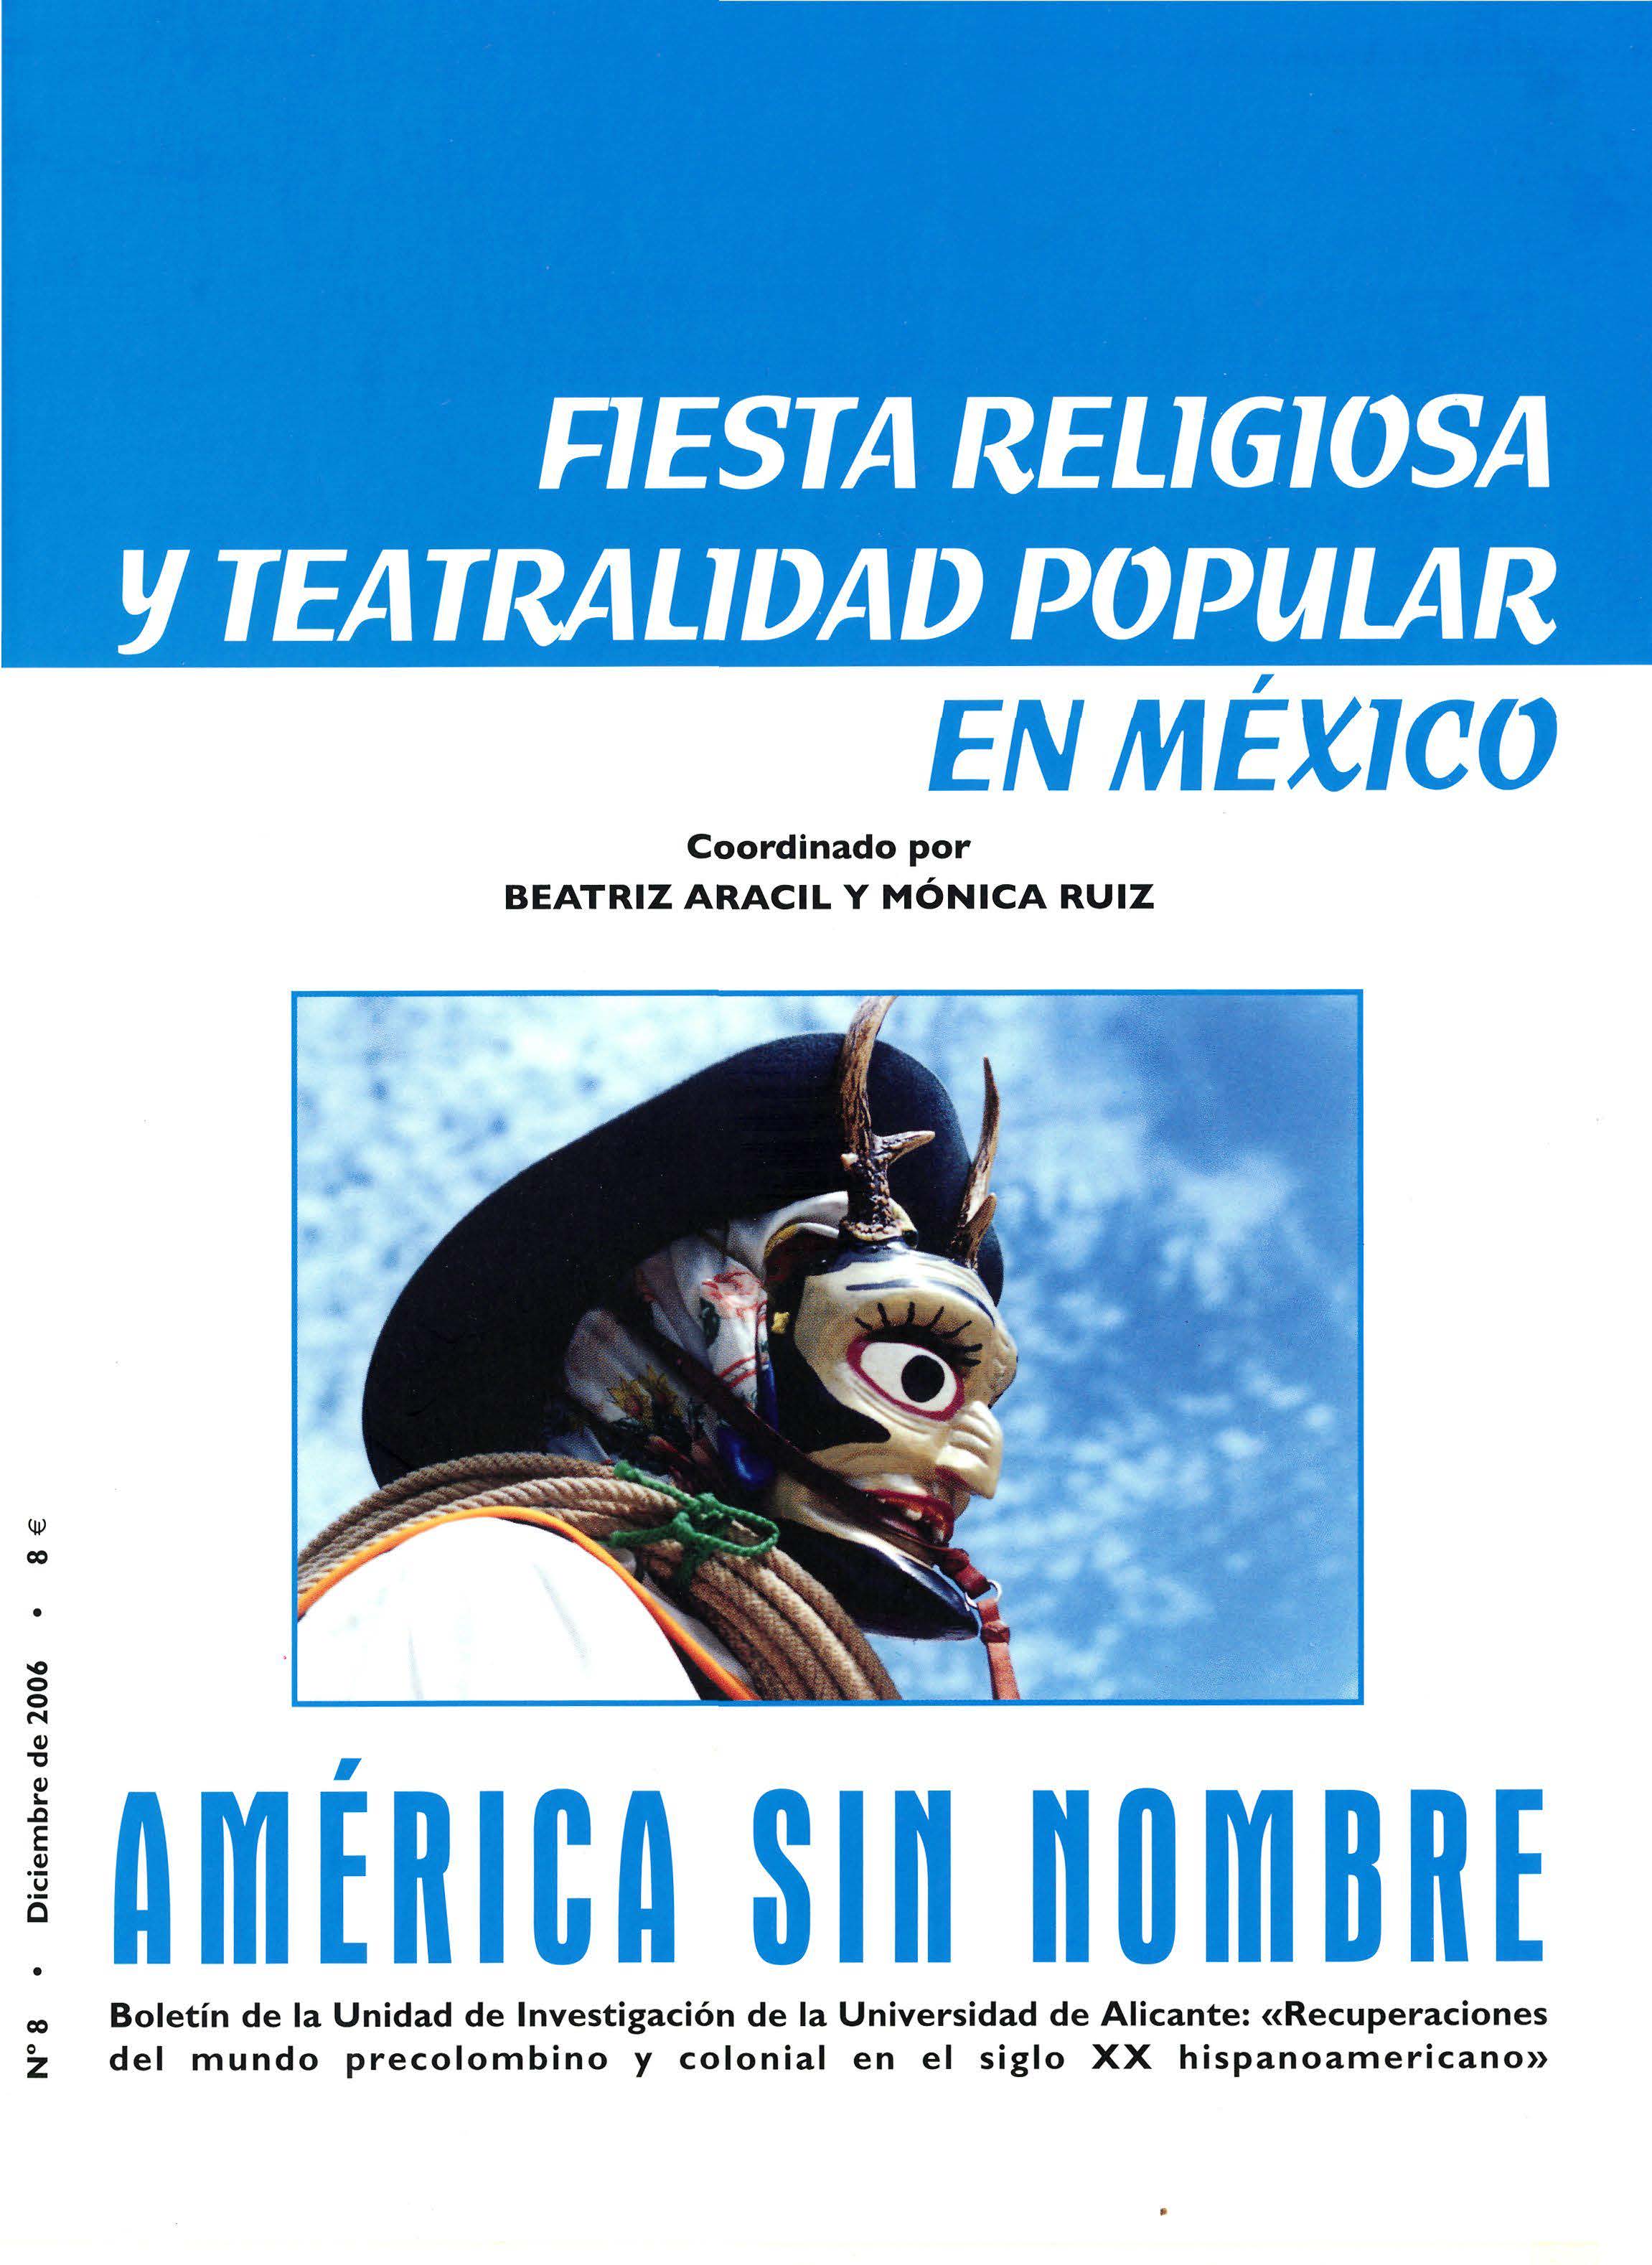 					Ver Núm. 8: Fiesta religiosa y teatralidad popular en México
				